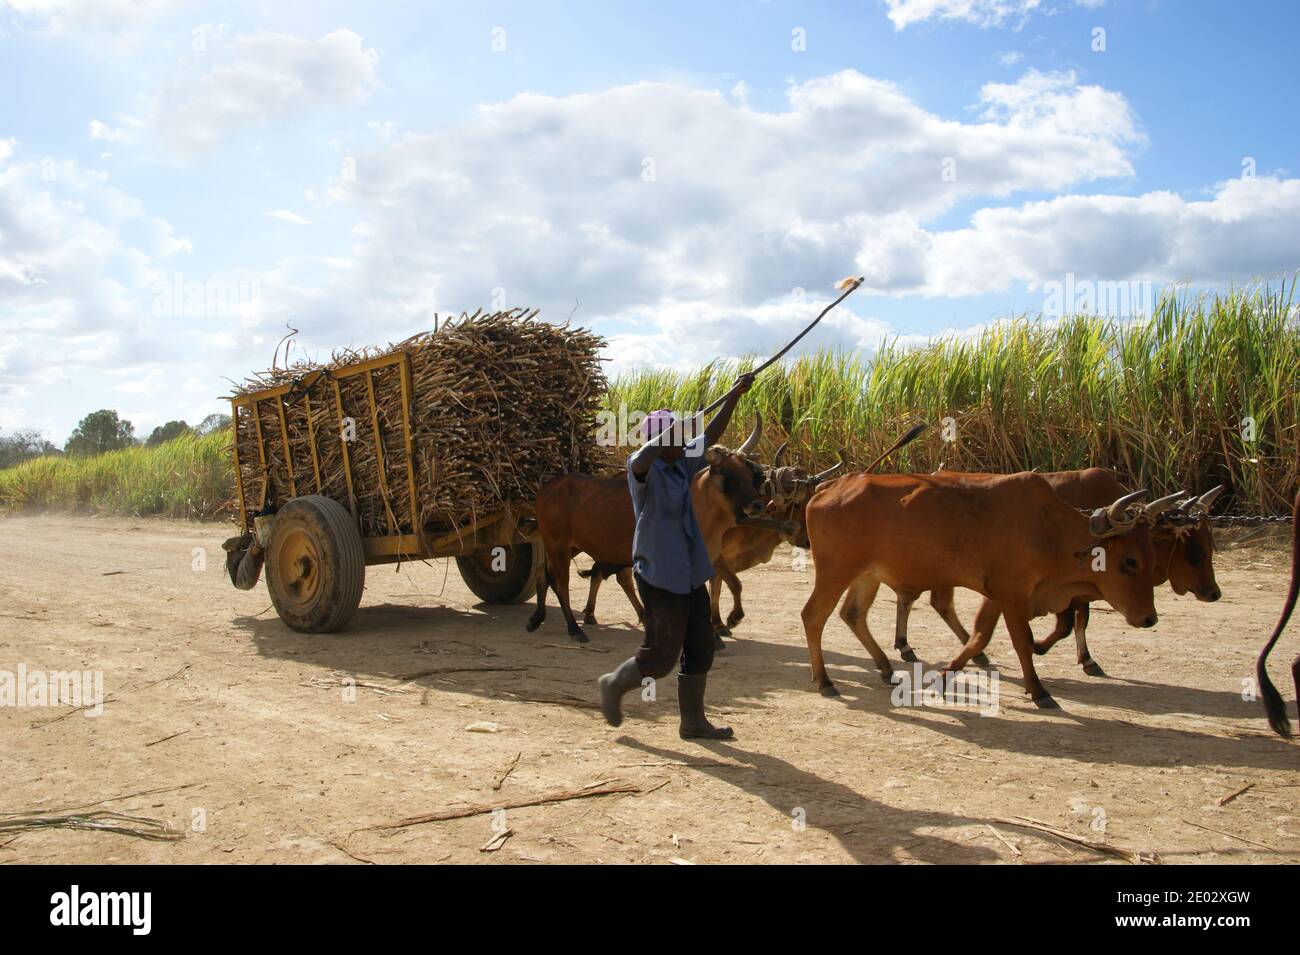 Un contadino sta trasportando la canna da zucchero in un carro trainato da buoi per i lavoratori. Bayahibe, la Romana, Repubblica Dominicana Foto Stock